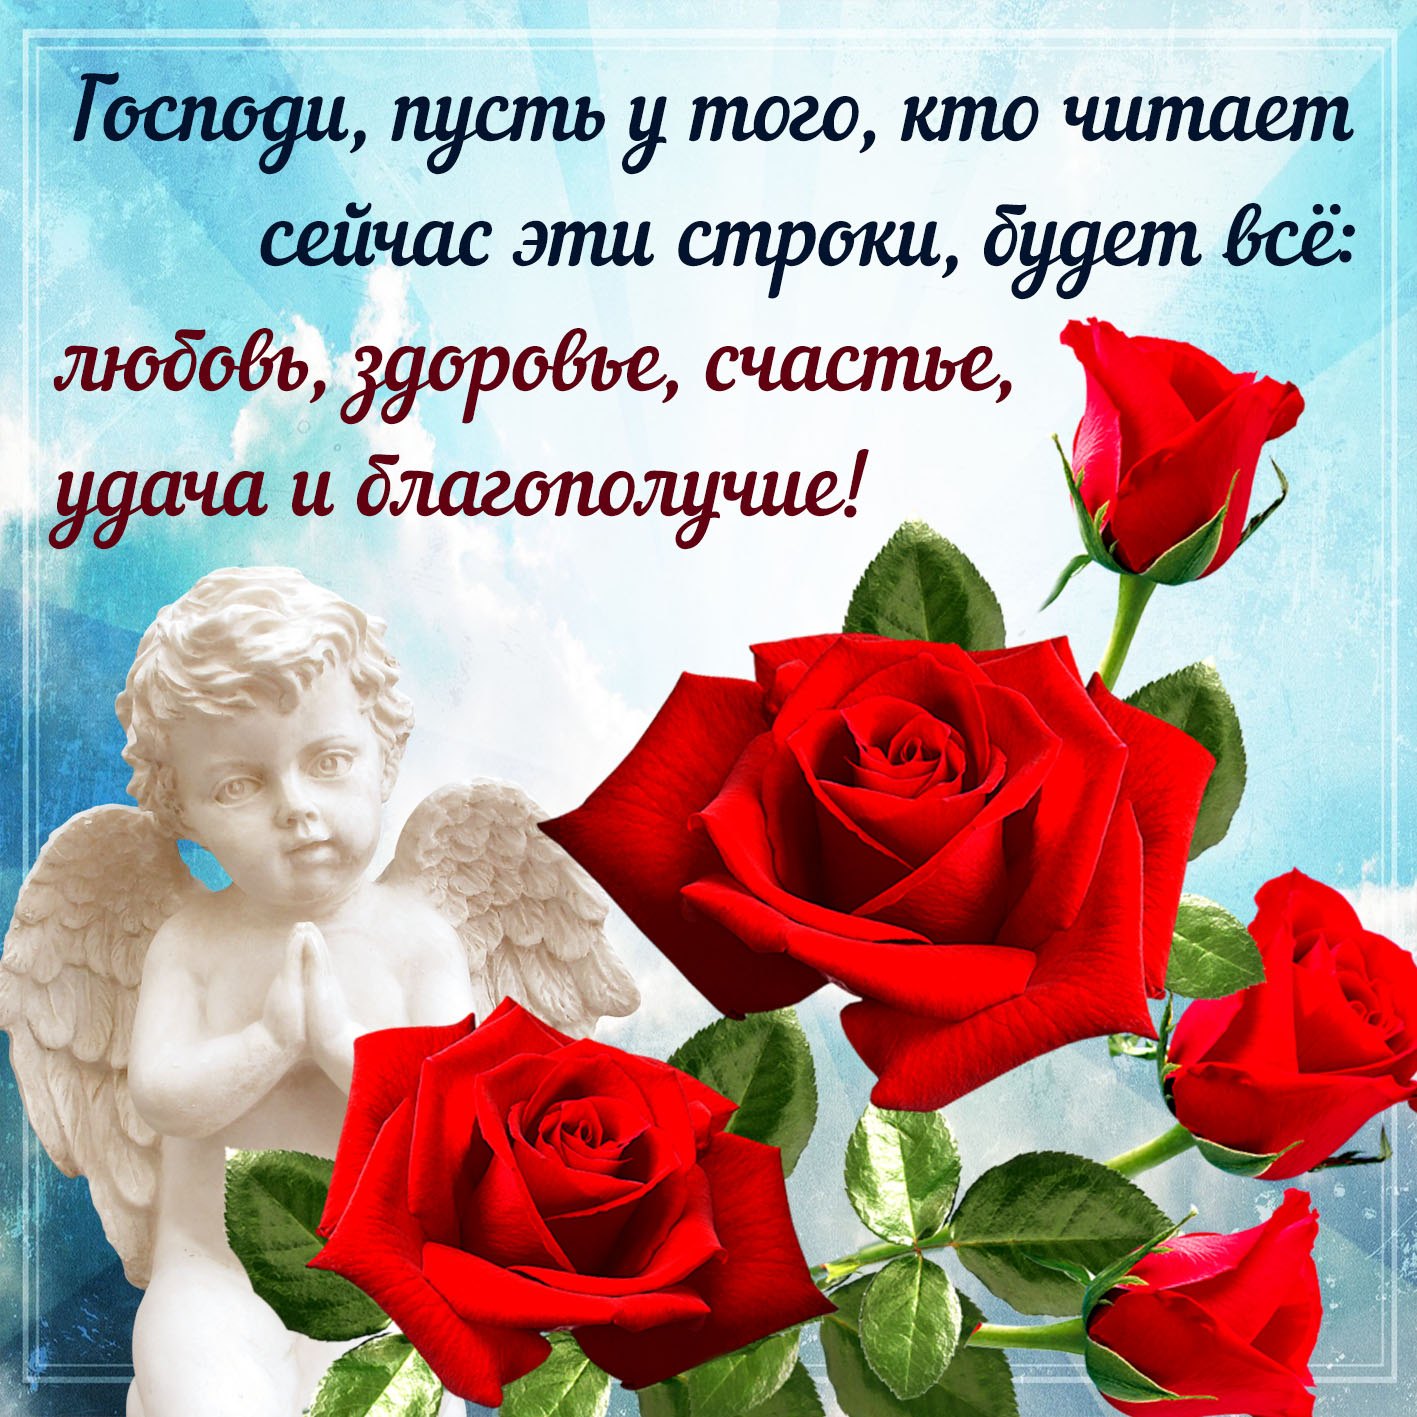 Счастья любви здоровья удачи открытки - фото и картинки webmaster-korolev.ru